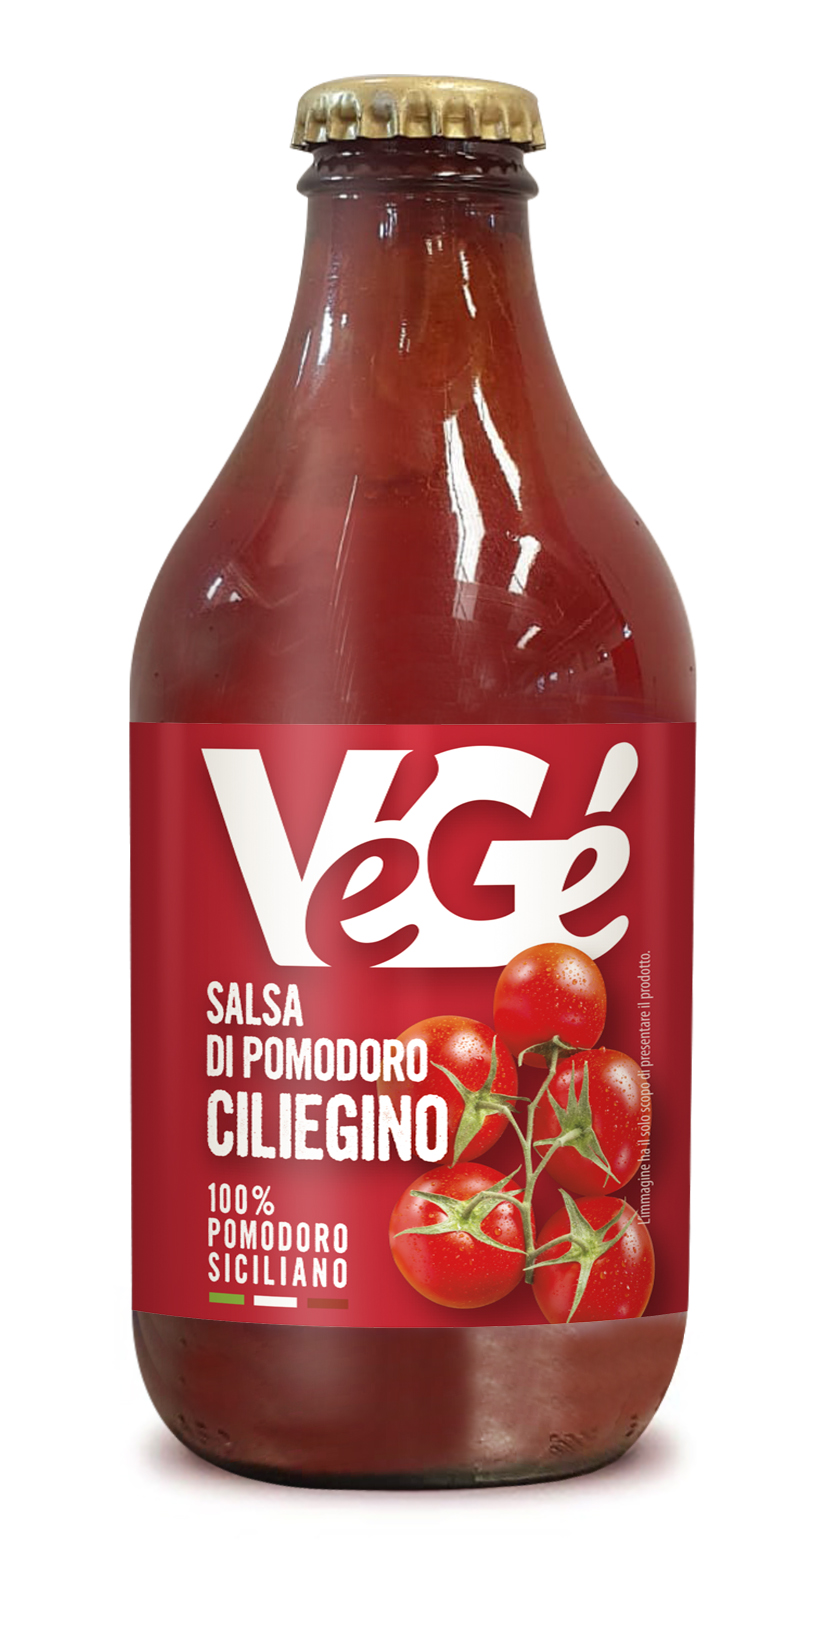 Bottiglia di salsa di pomodoro ciliegino Vegé GDO (Grande Distribuzione Organizzata)